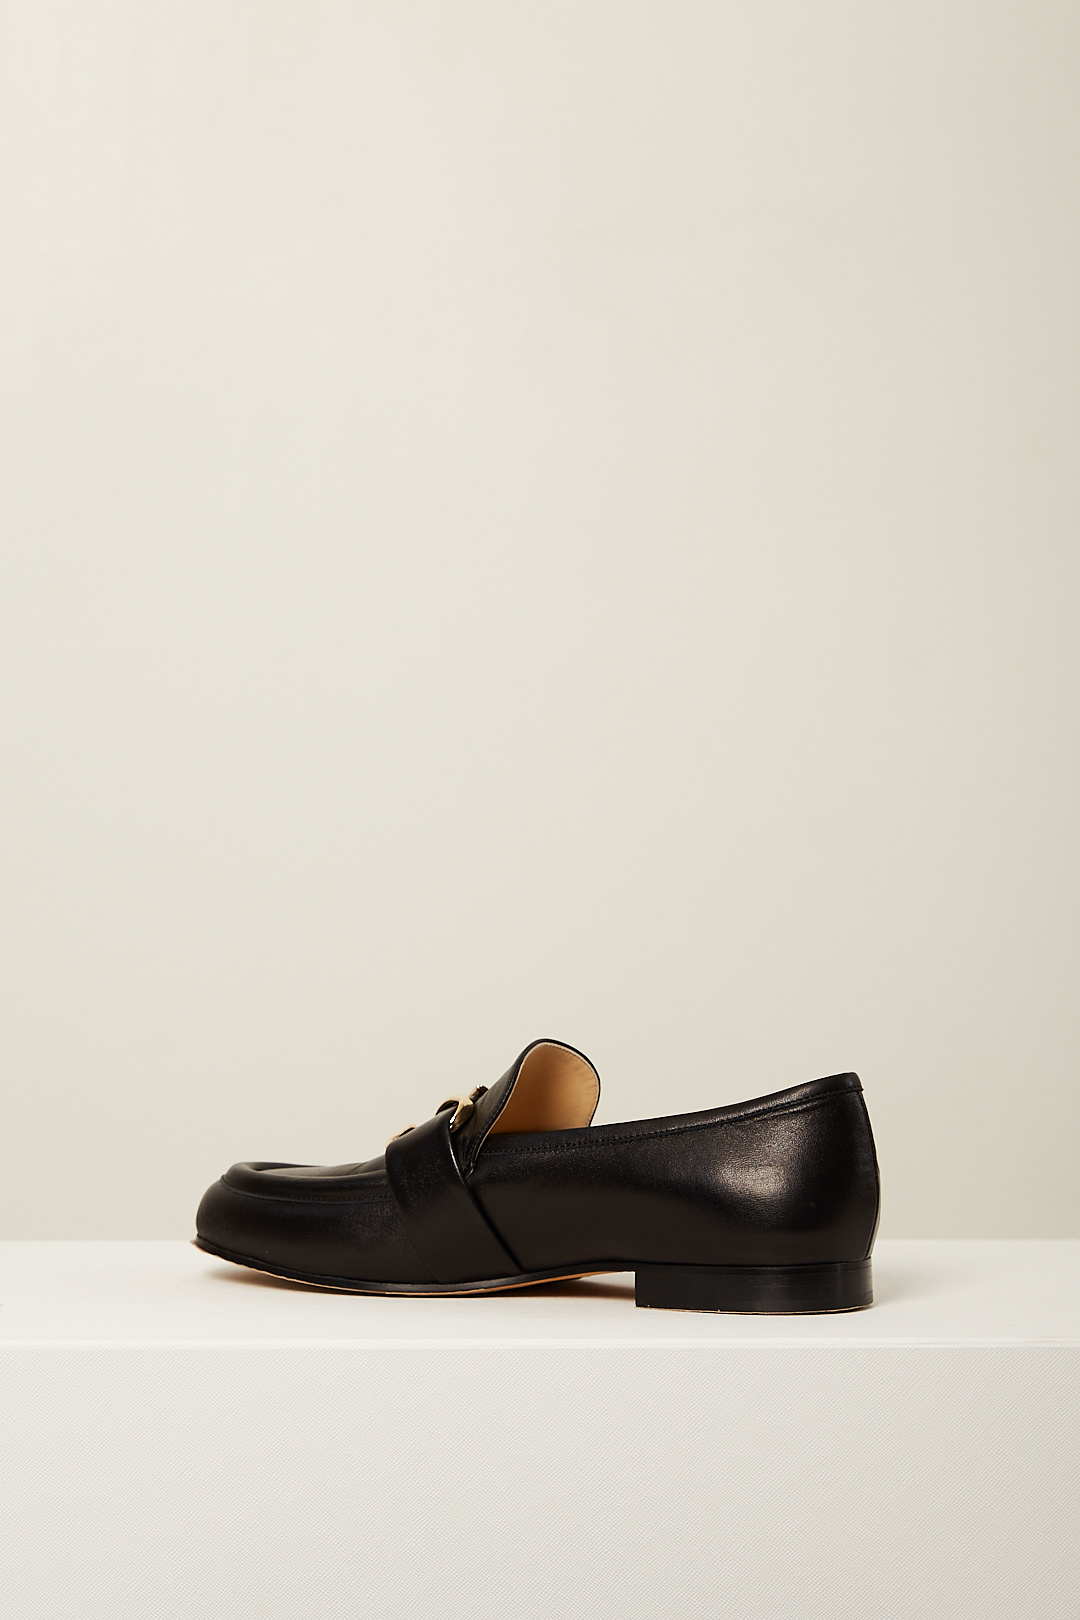 Proenza Schouler - 015NOEL loafers